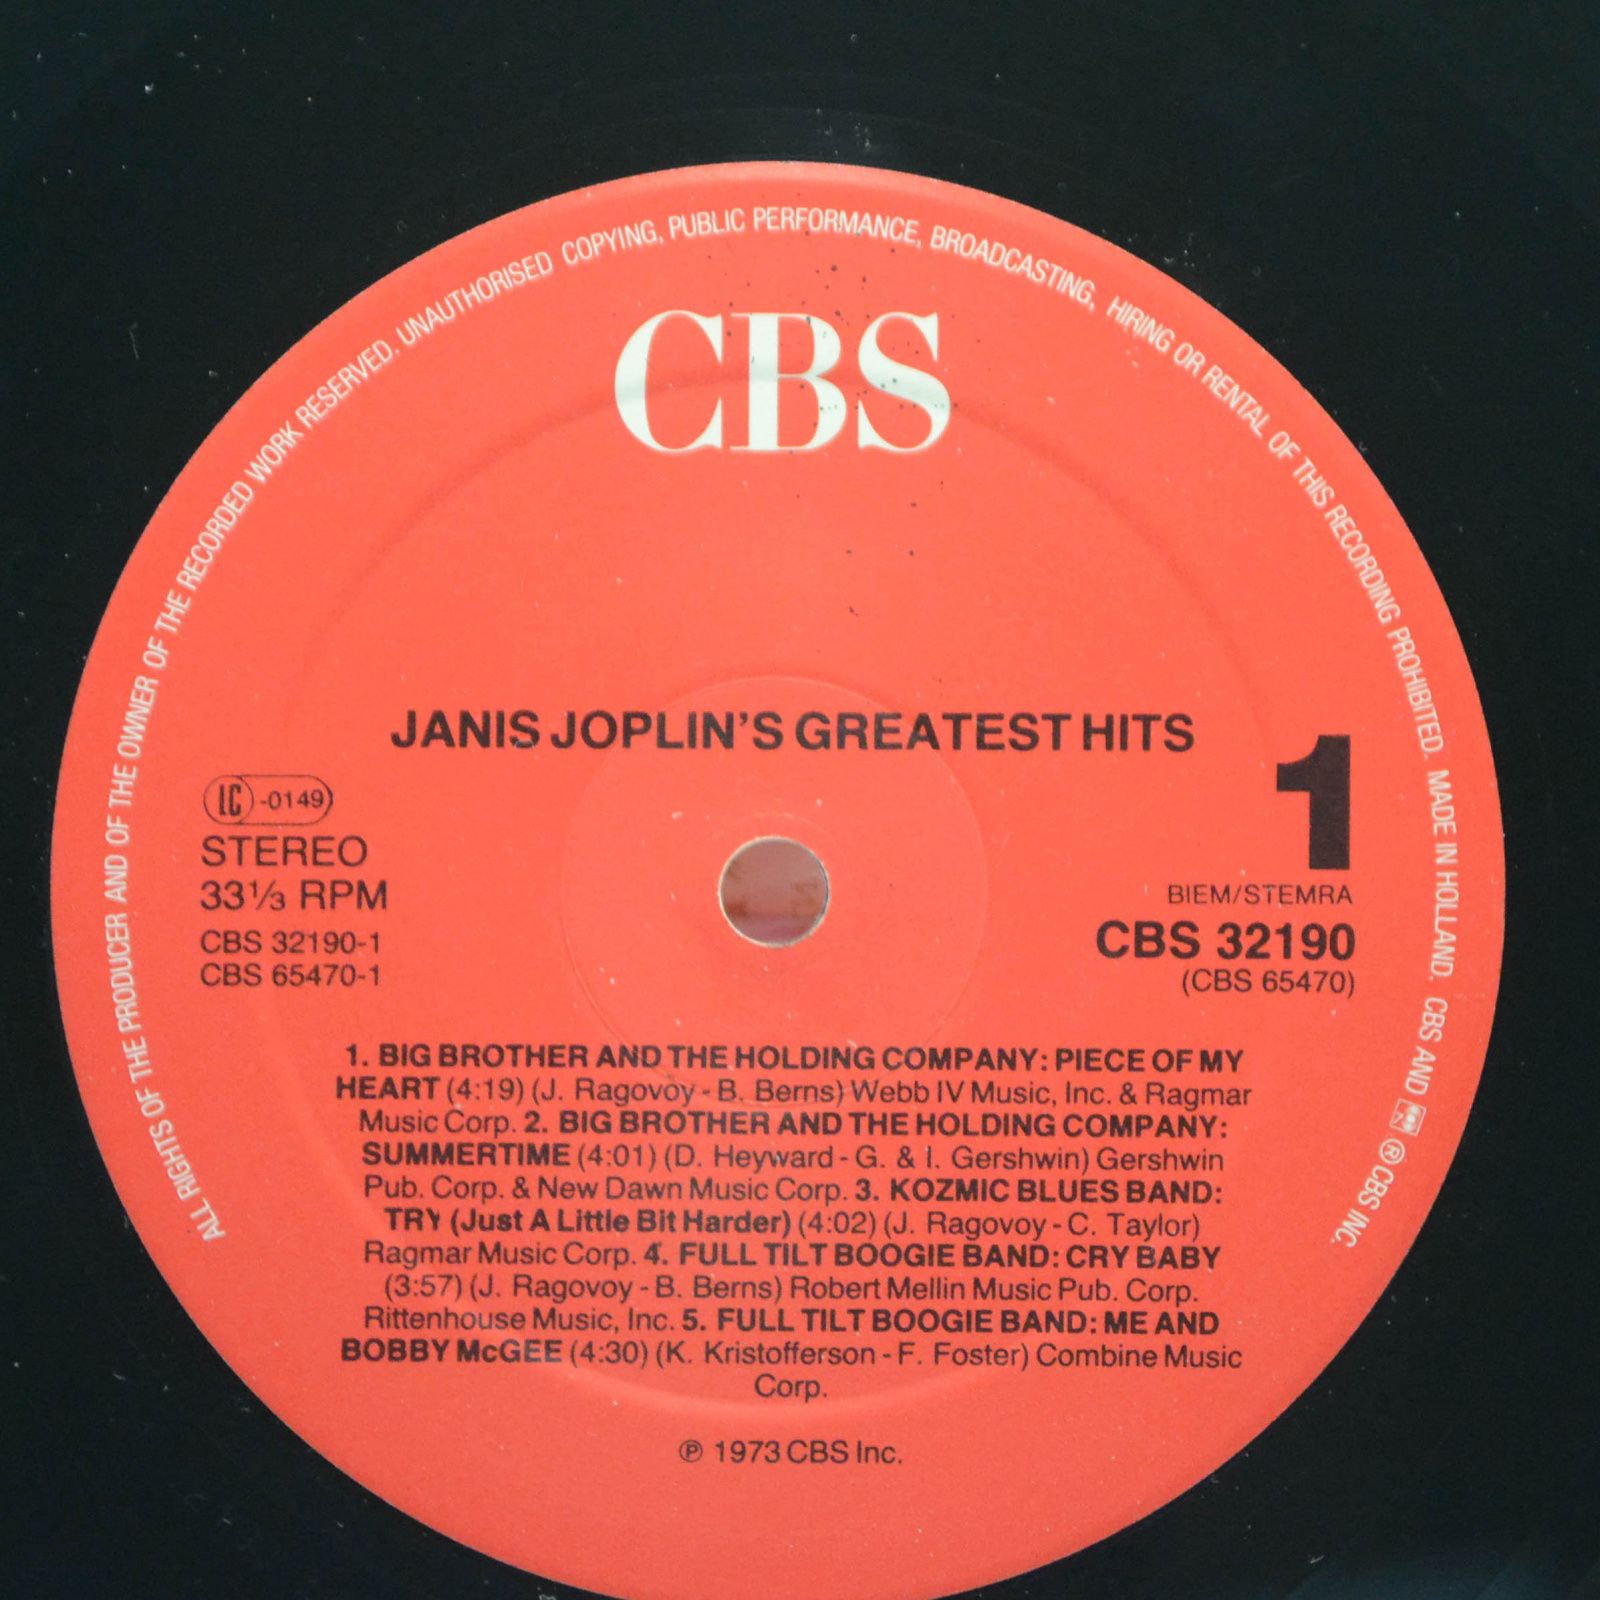 Janis Joplin — Janis Joplin's Greatest Hits, 1983